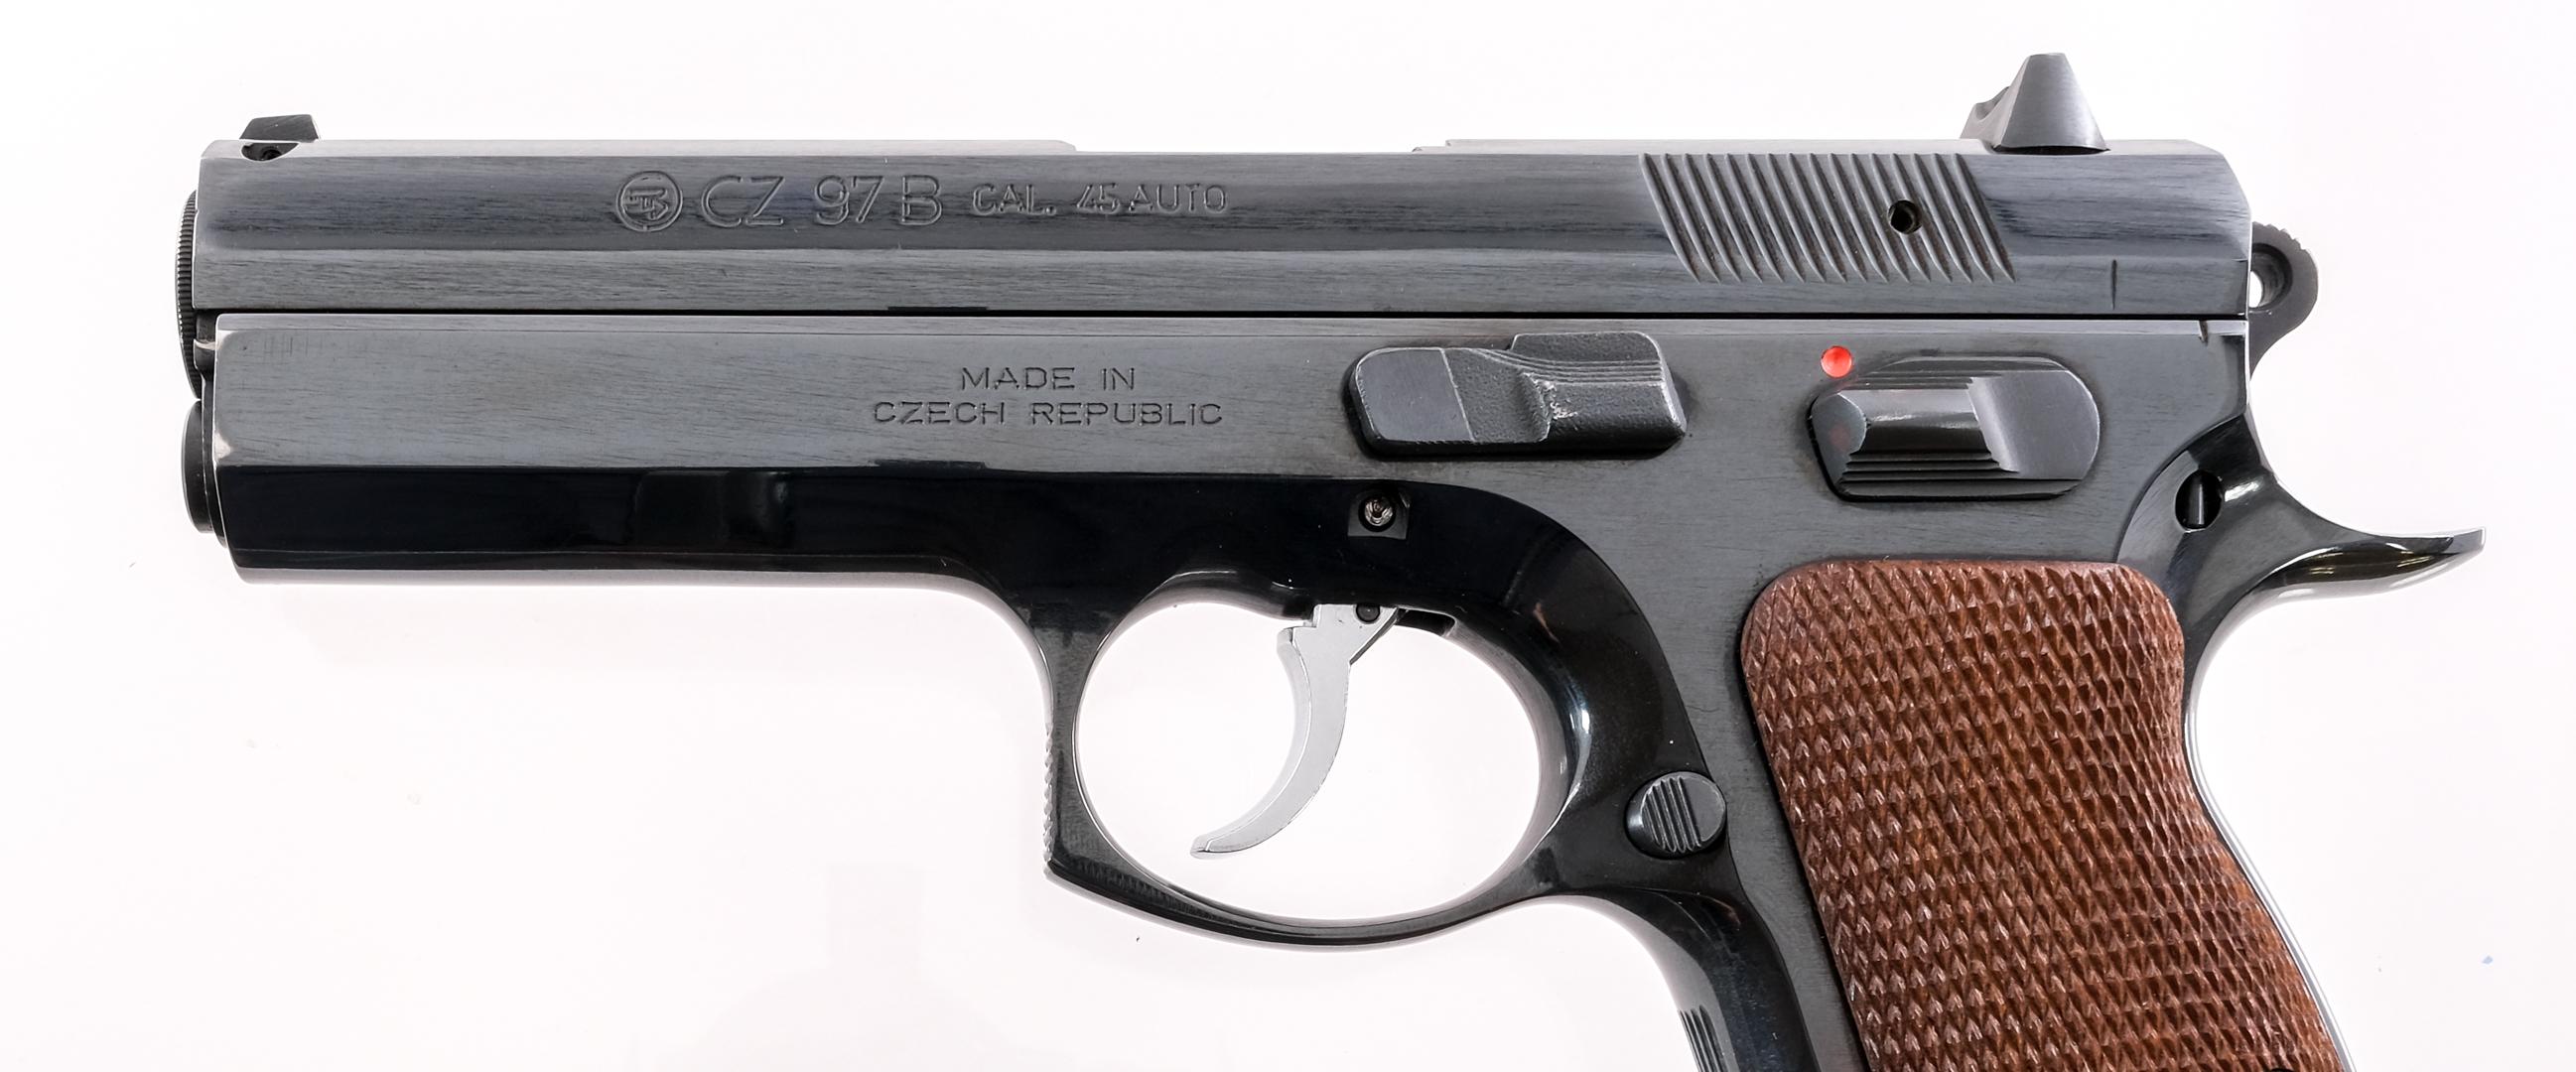 CZ 97 B .45 Semi-Auto Pistol